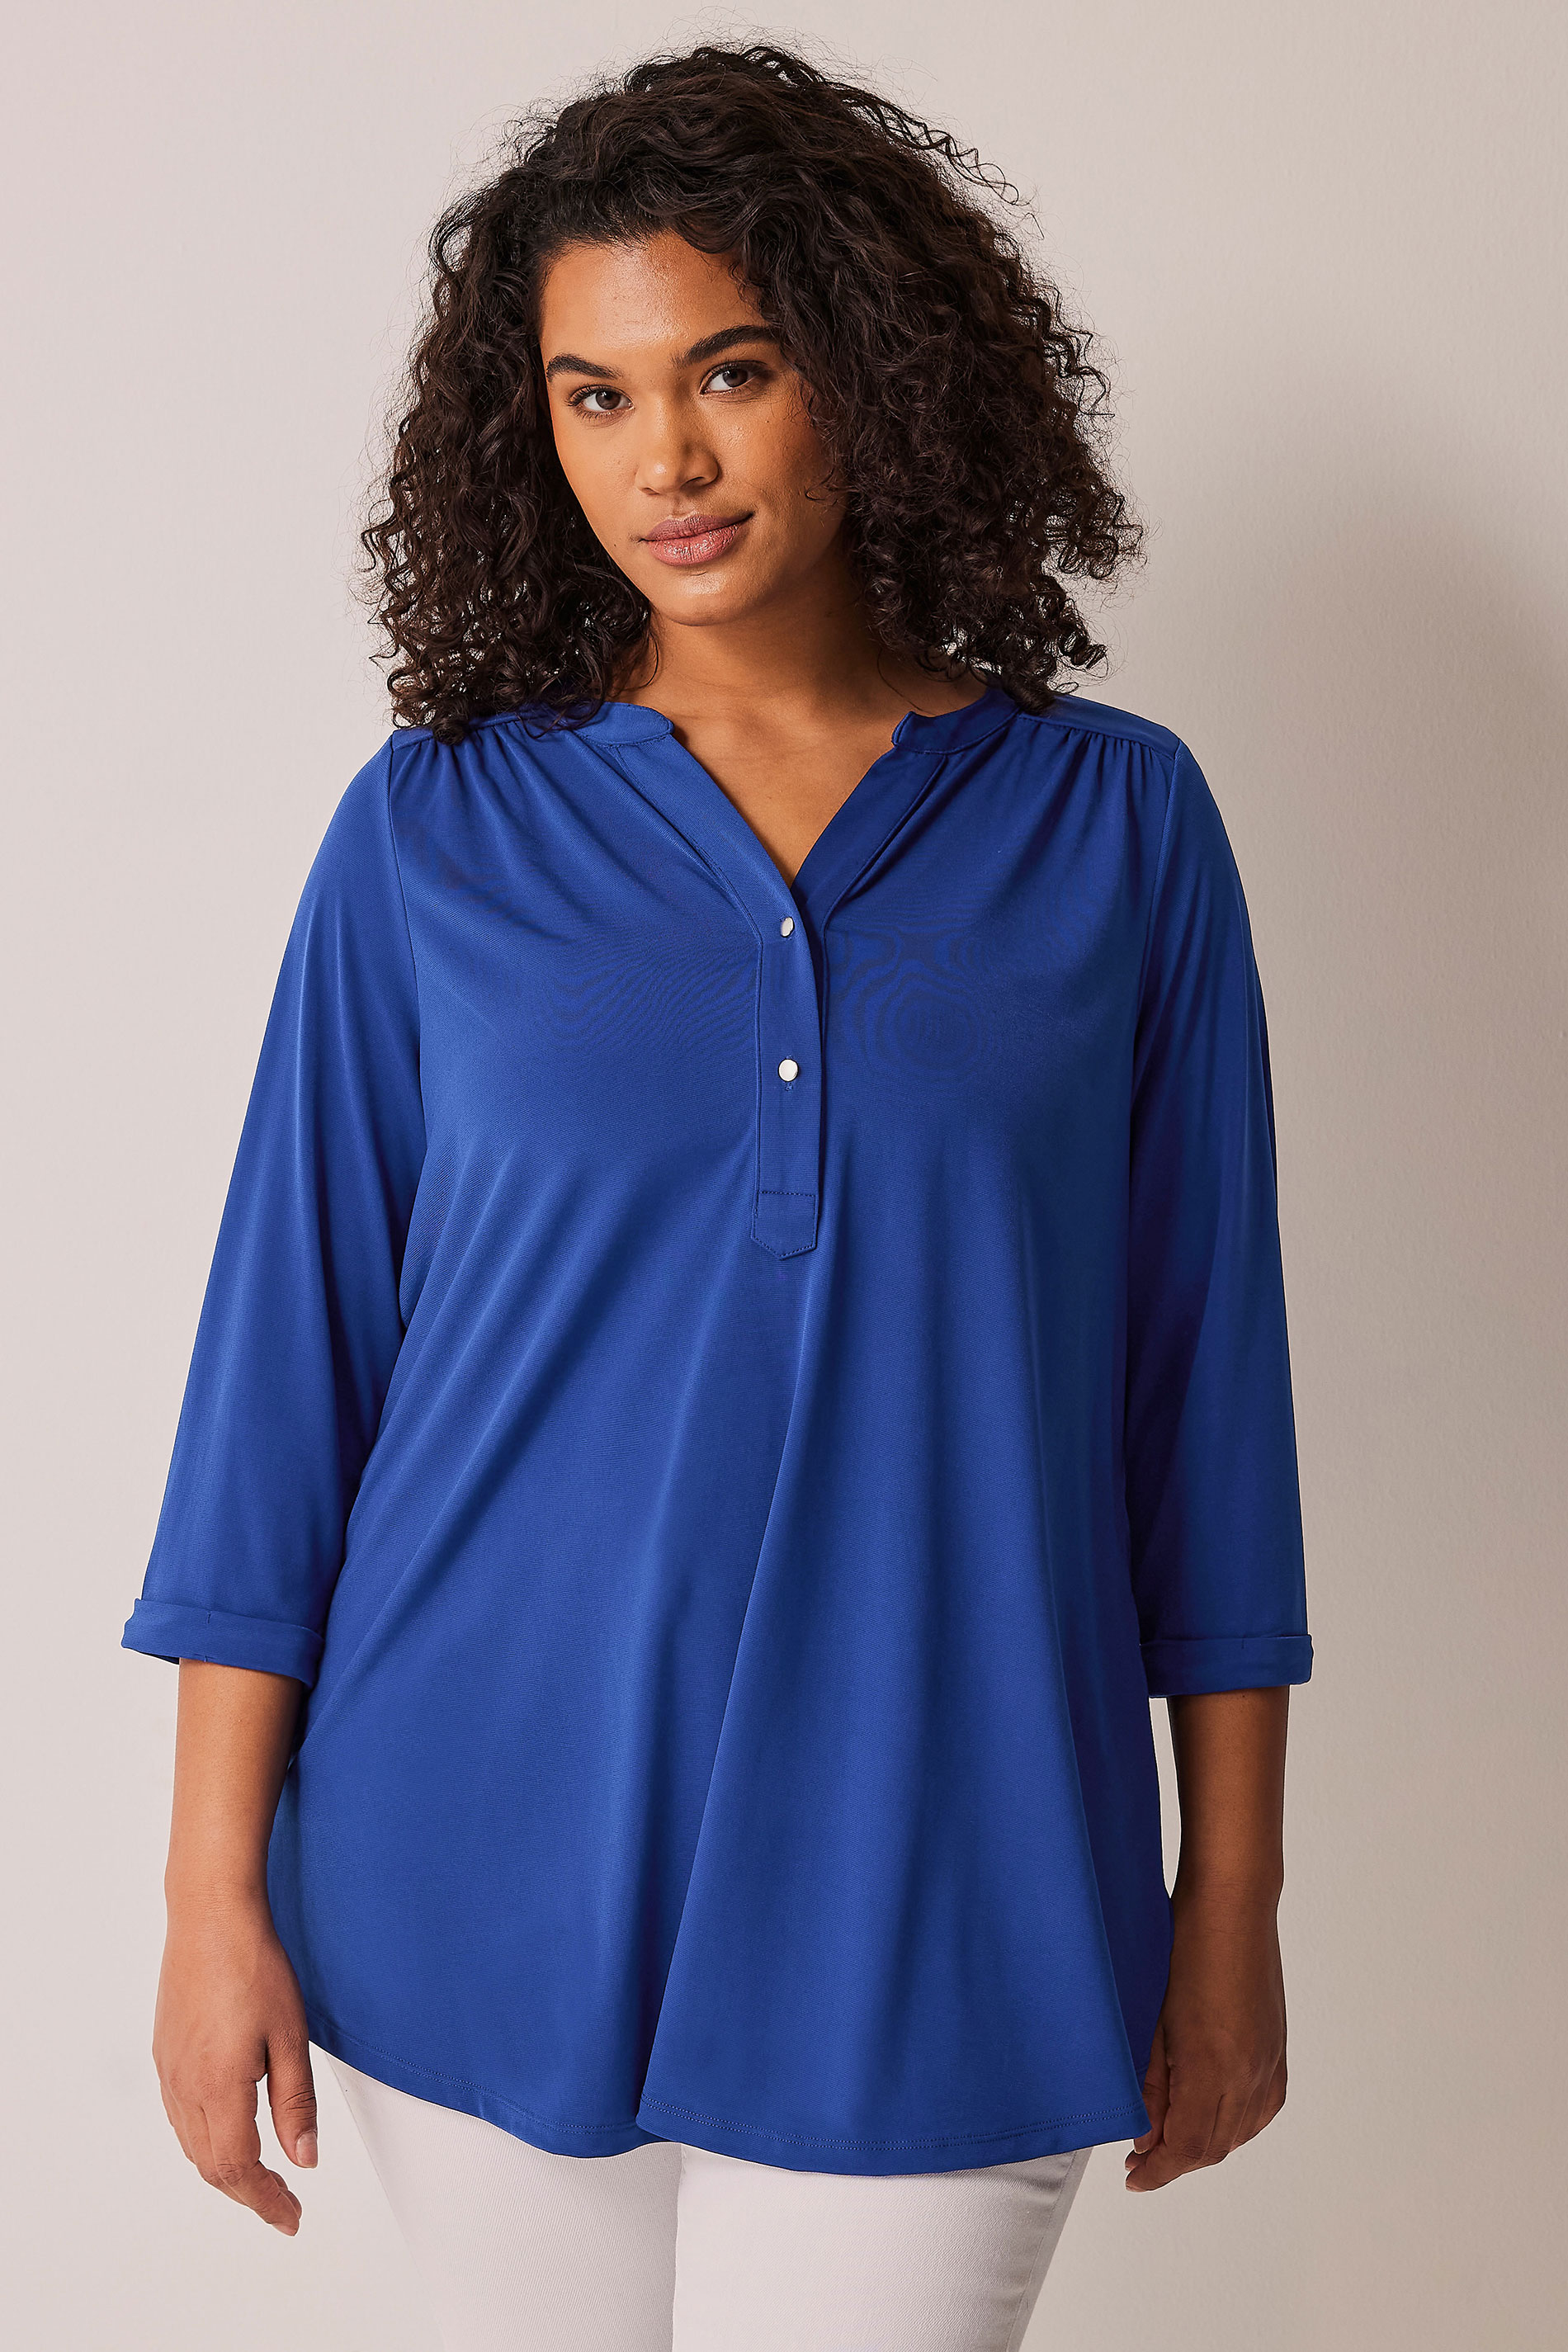 EVANS Plus Size Cobalt Blue Jersey Shirt | Evans 2